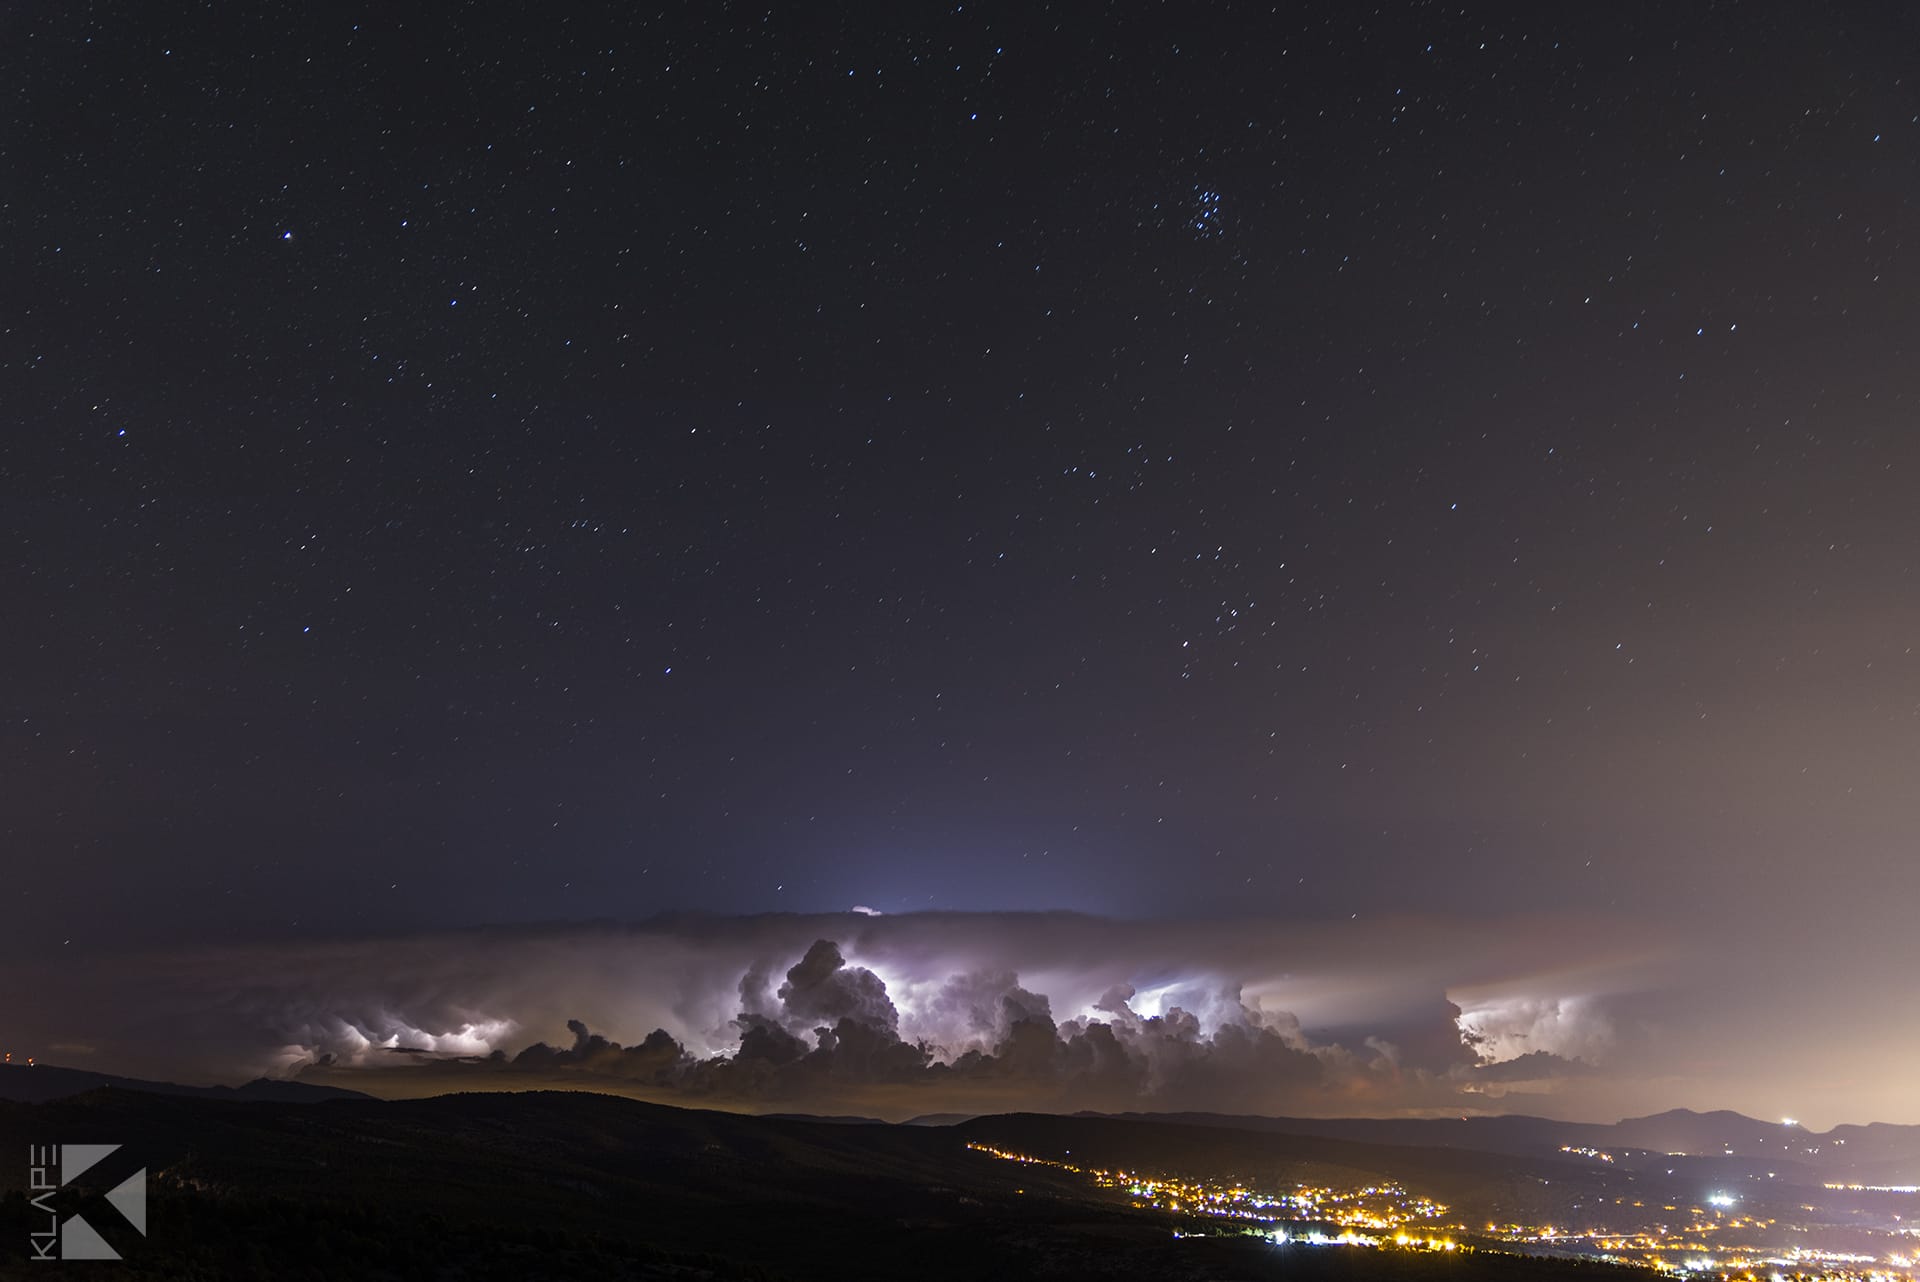 Orage d'hier soir sur Fréjus, photographié depuis les alentours du Cap Canaille, à environ 100km de distance. Des flashs presque toutes les secondes durant 3h !  - 06/09/2019 02:00 - Antoine Mangiavacca